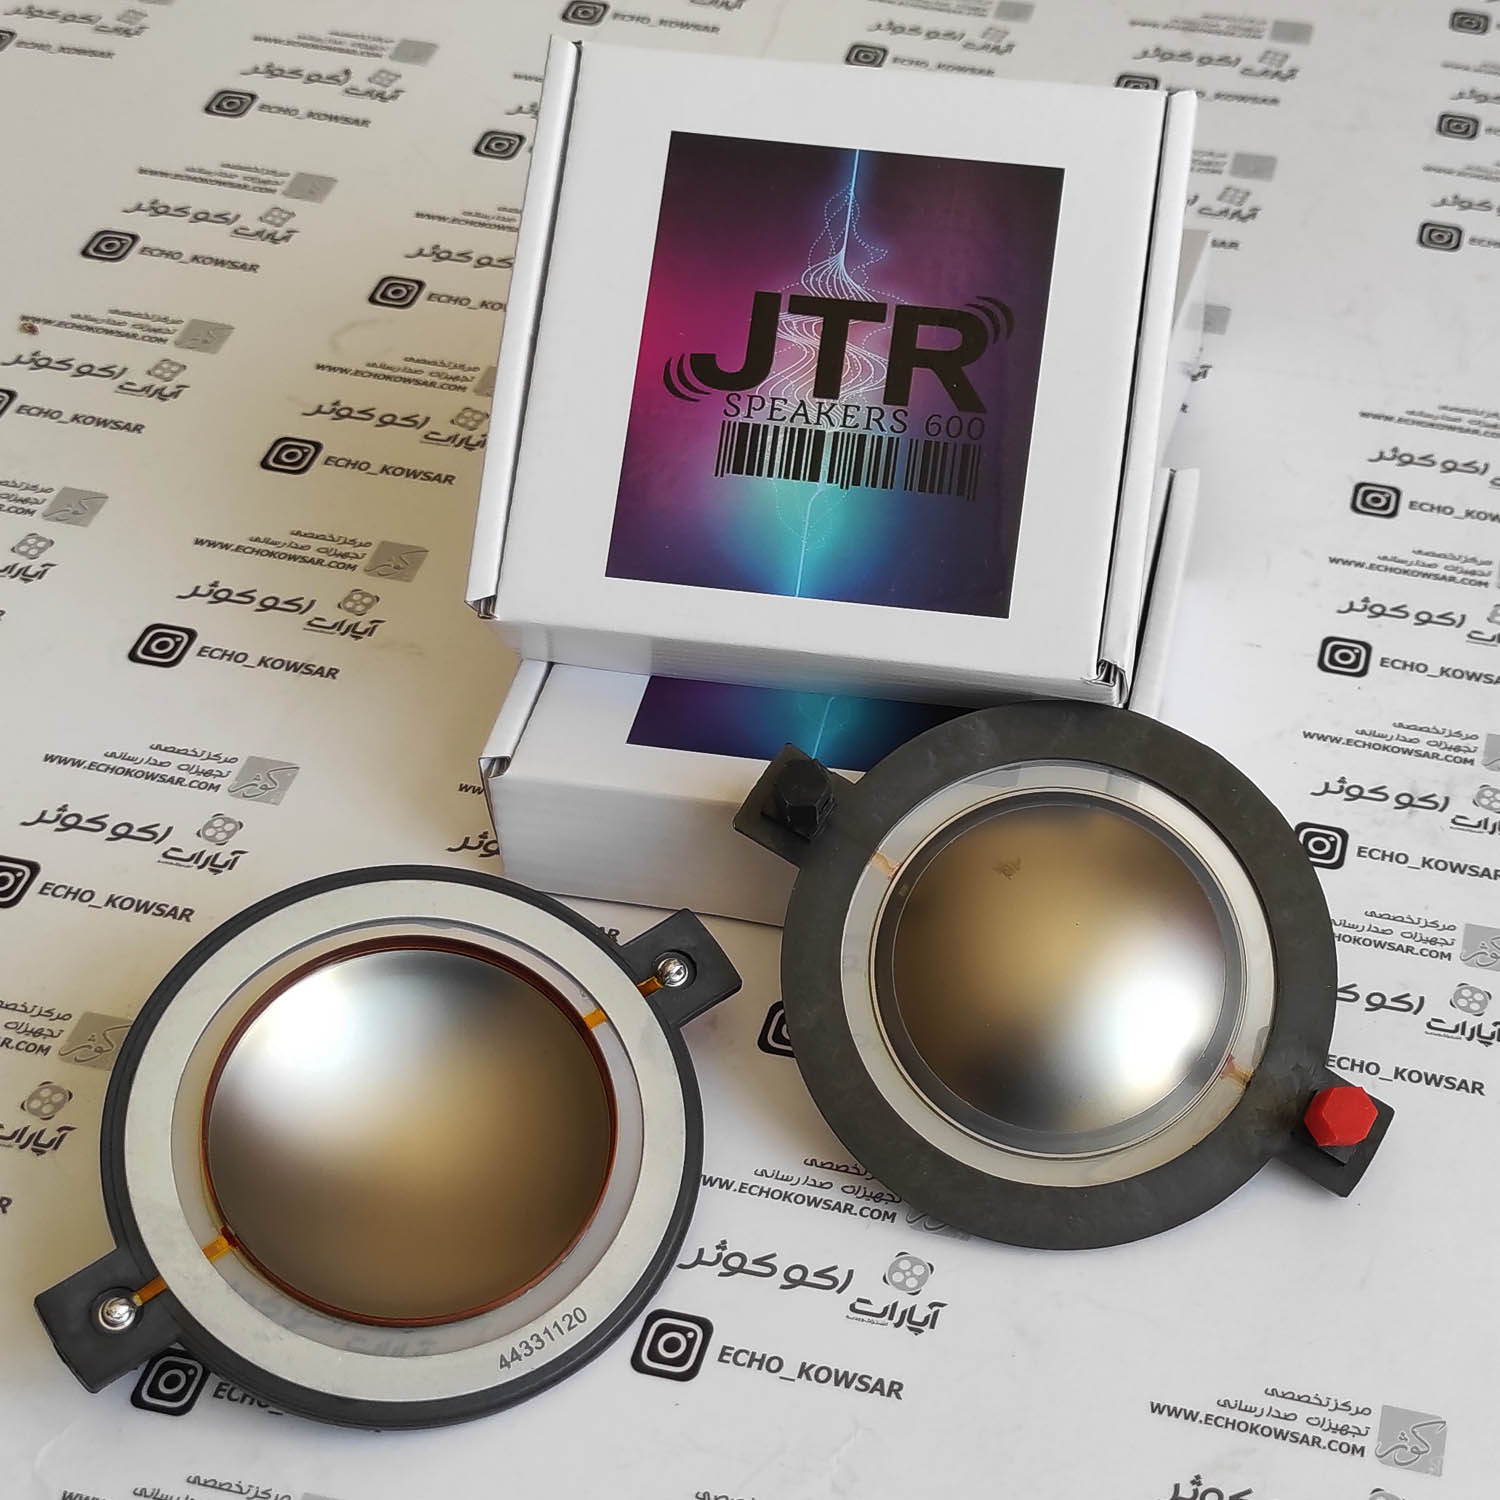 JTR 600 های کپی